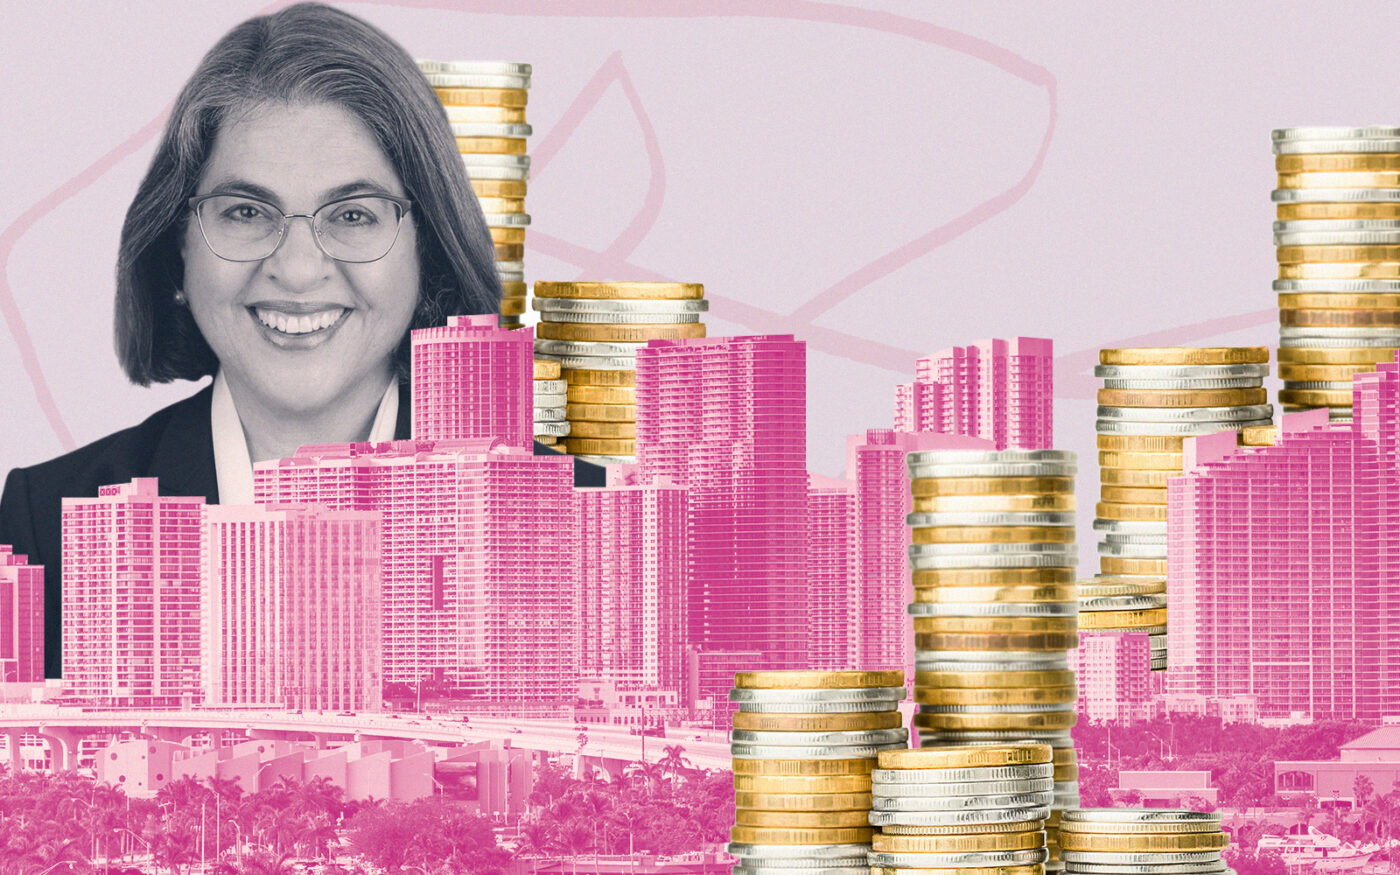 Miami-Dade County Mayor Daniella Levine Cava; Miami skyline; coins